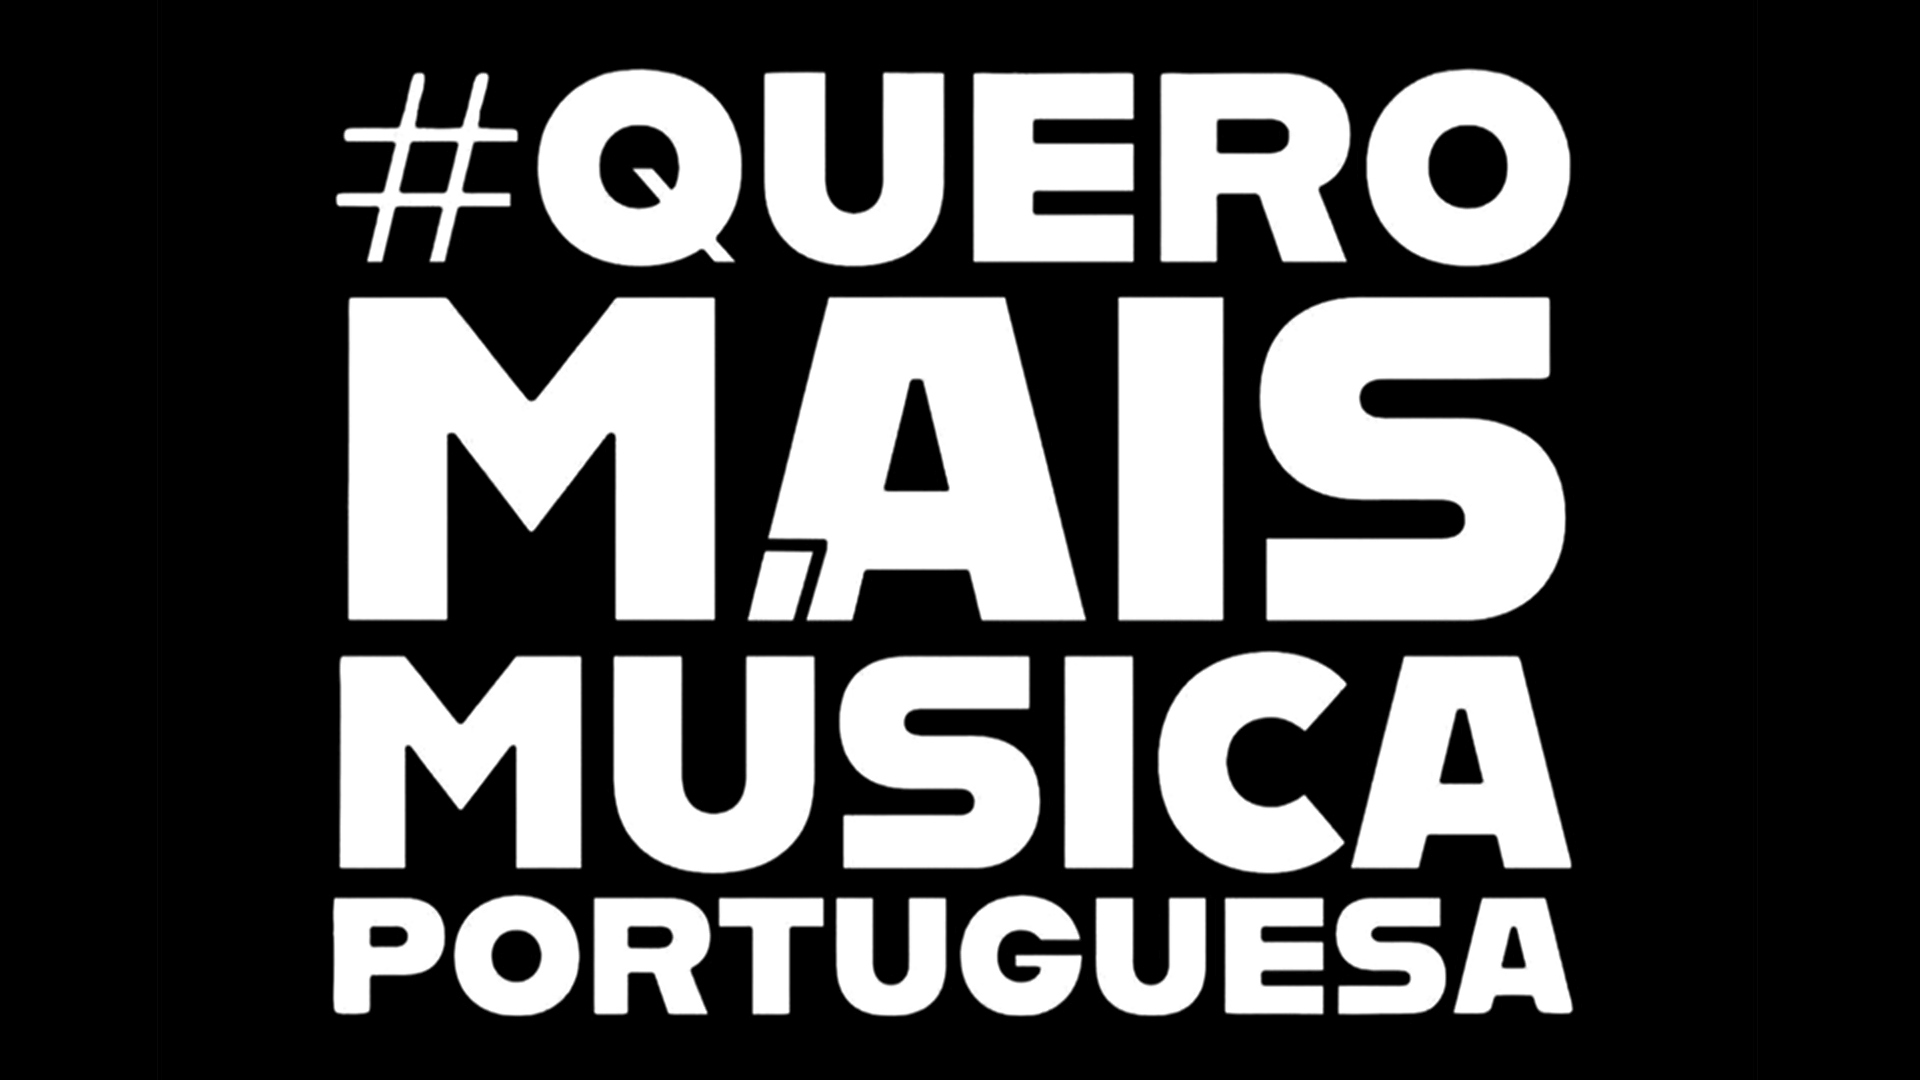 Música portuguesa nas rádios: GDA, Audiogest, e SPA querem quota fixa de 35%